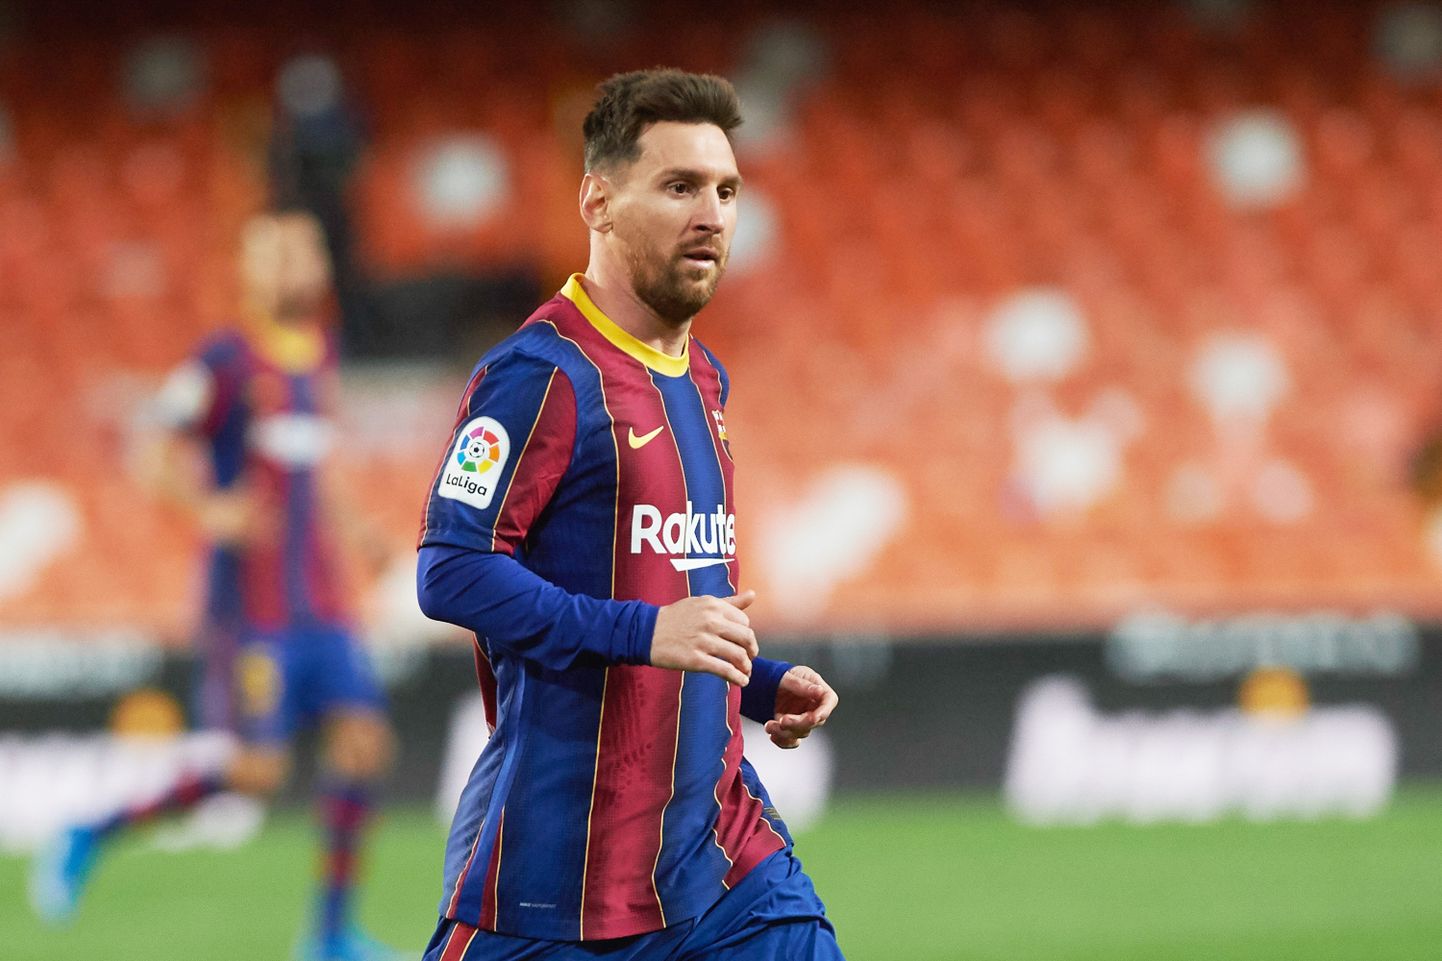 Lionel Messi kutsus Barcelona mängijad enda juurde grillima, kuid see võib meeskonnale tuua kaasa hoopis pahandusi.